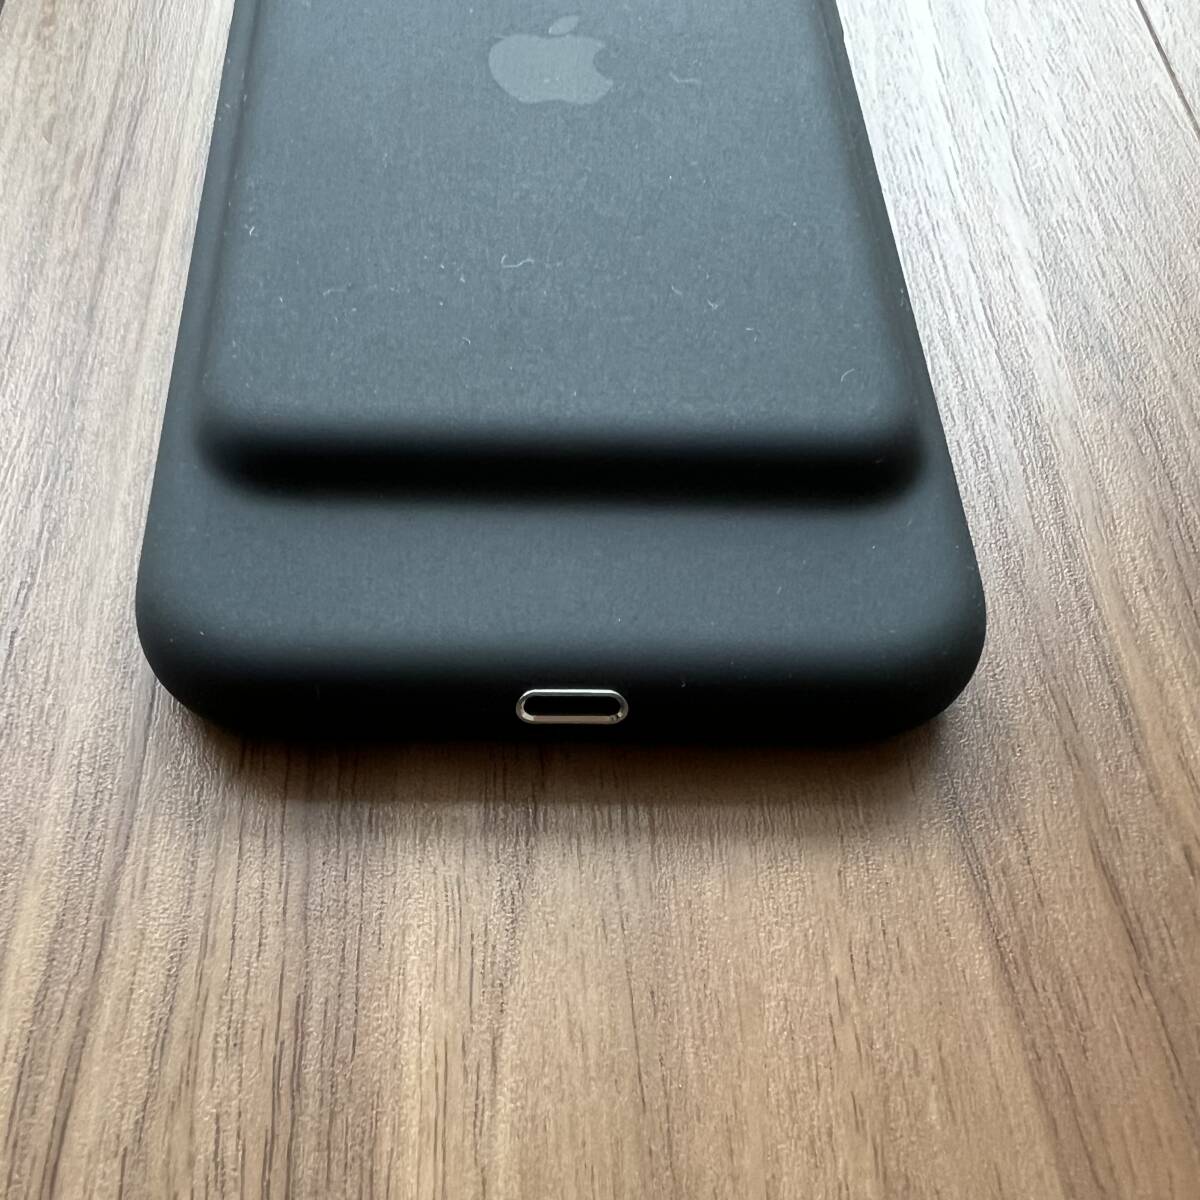 【未使用・交換品】iPhone 7 Smart Battery Case ブラック iPhone 7 スマートバッテリーケース